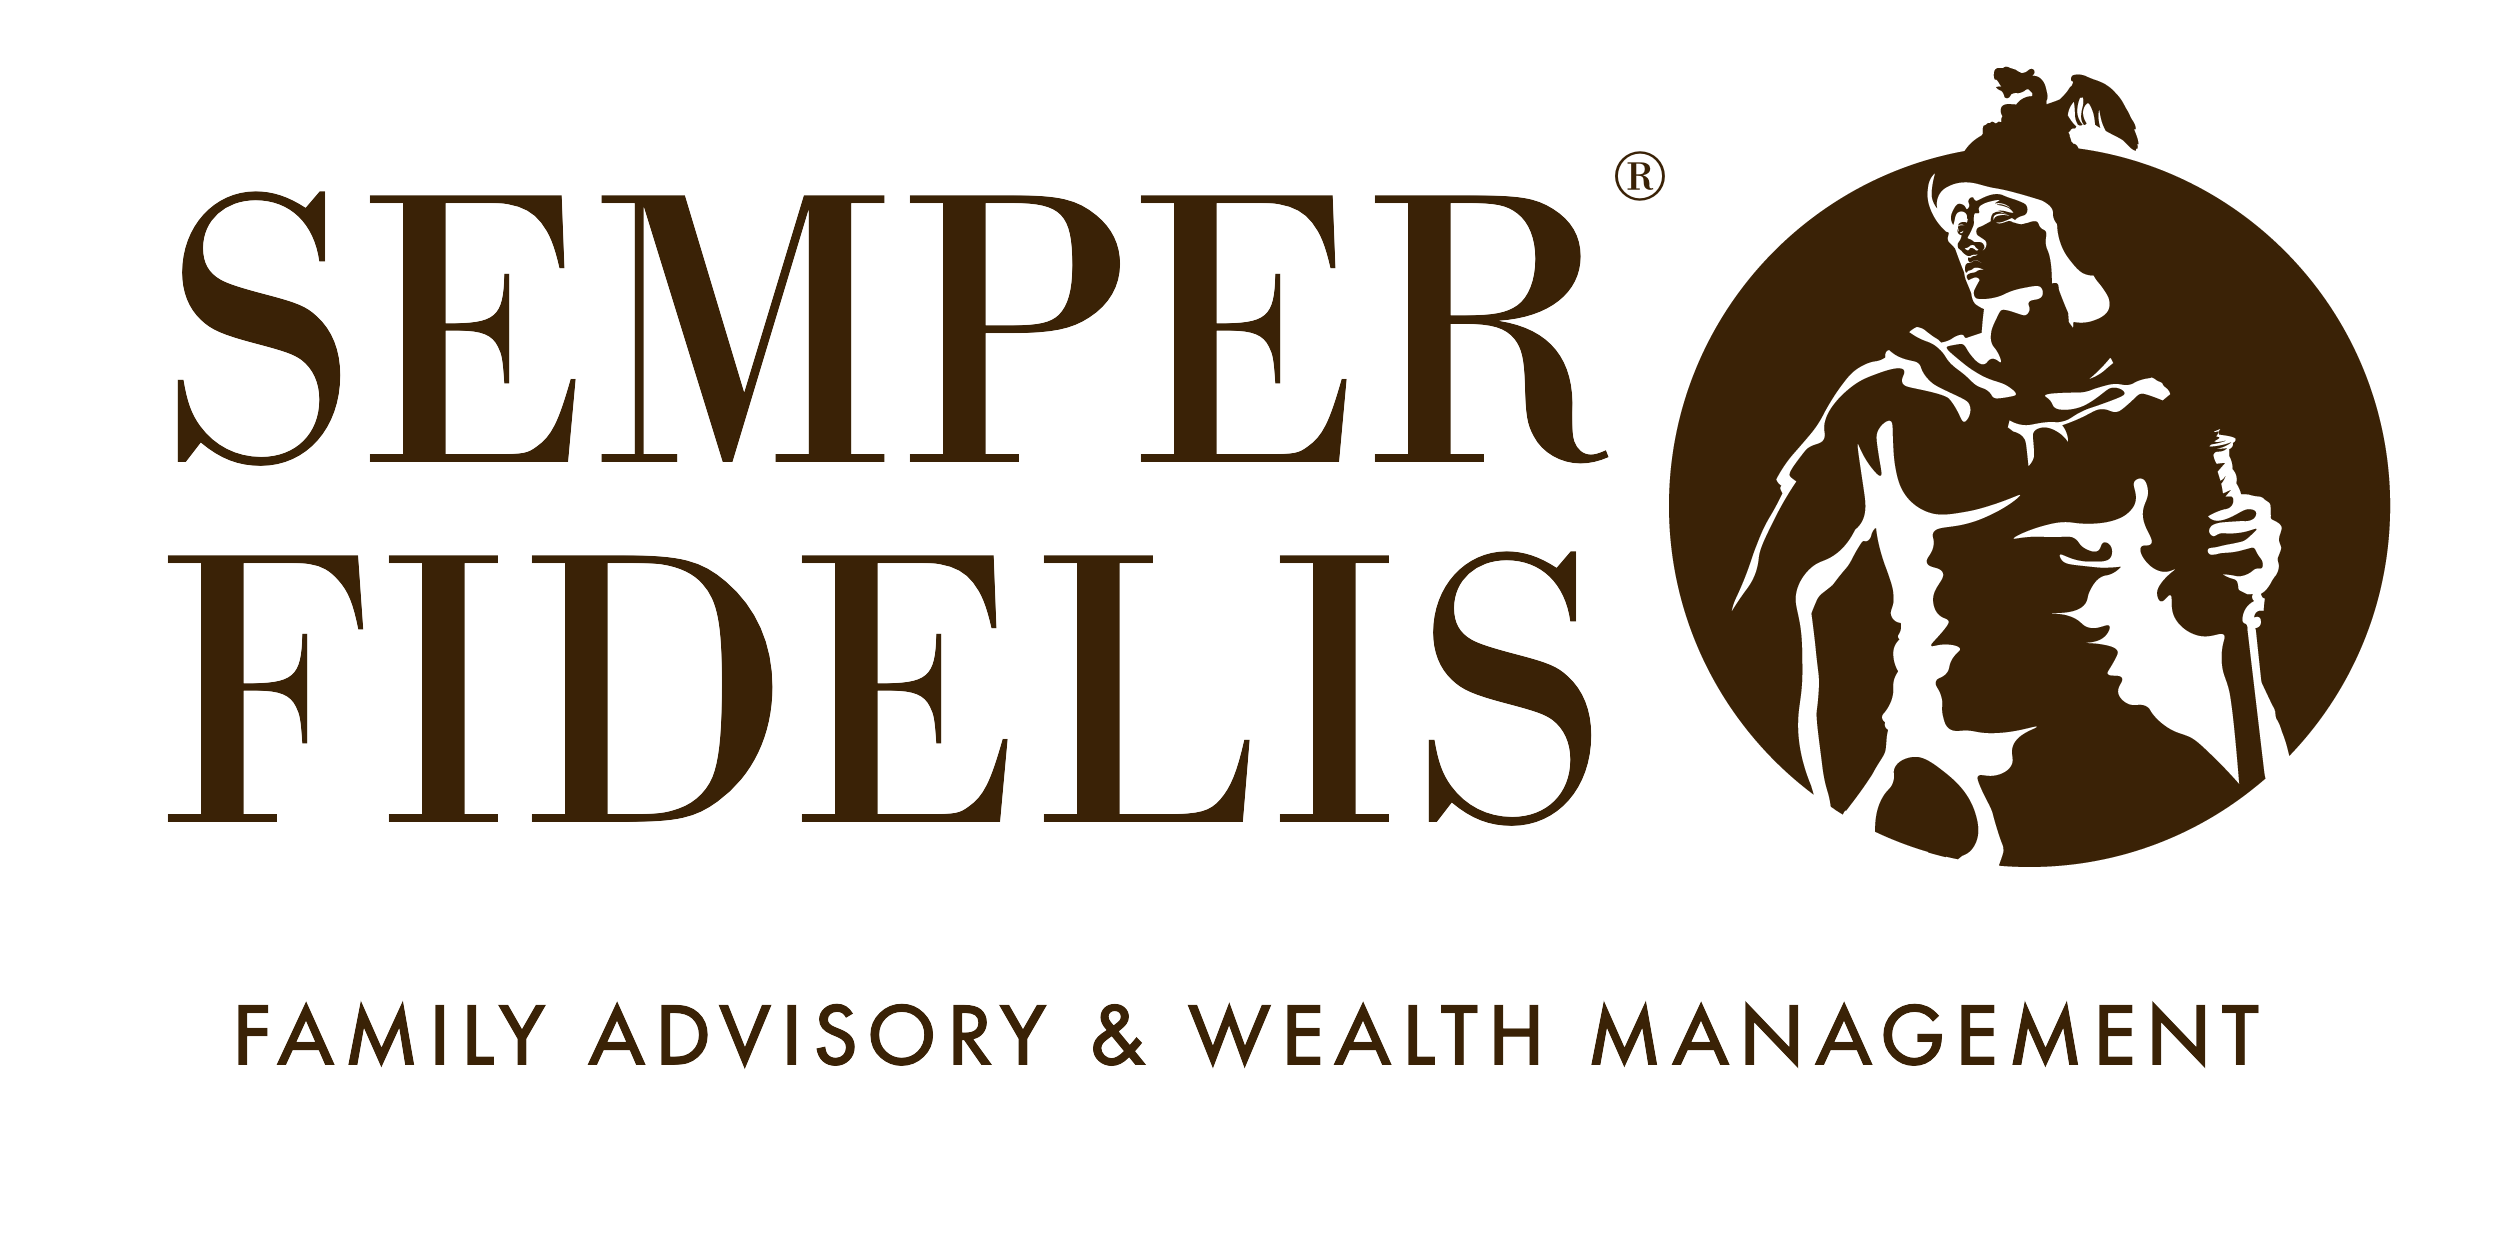 Semper Fidelis | Family Advisory & Wealth Management